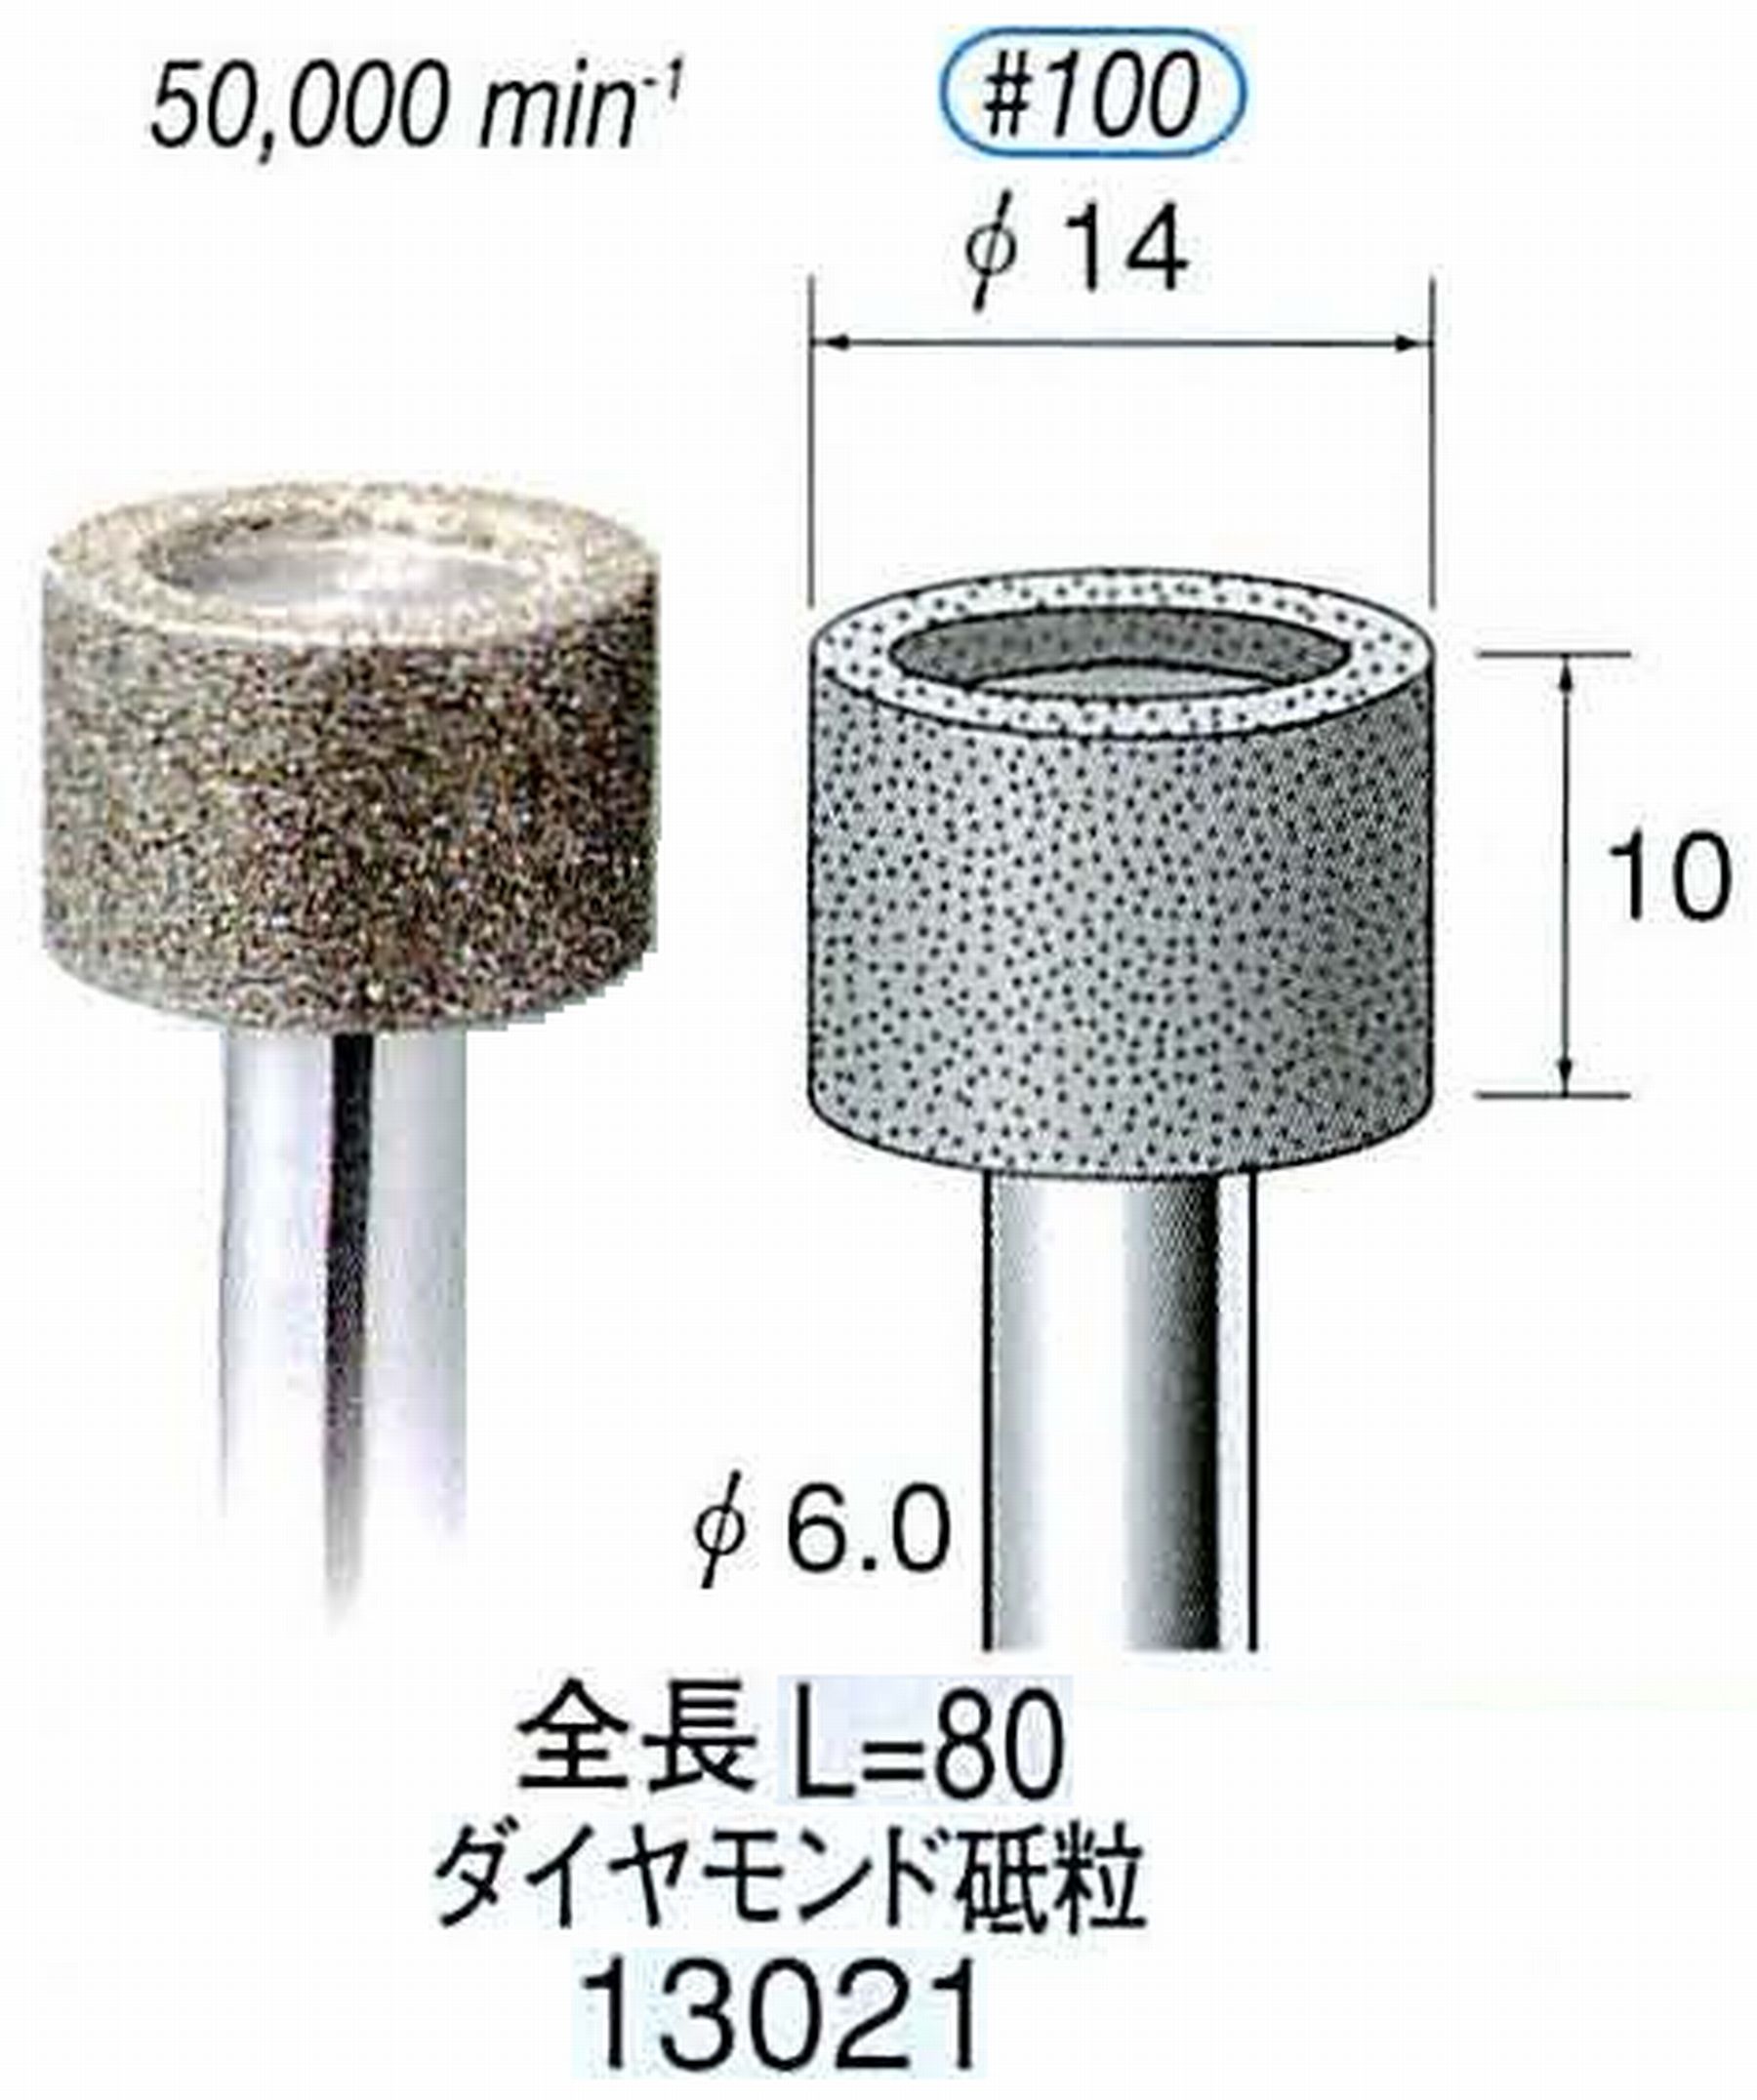 ナカニシ/NAKANISHI 電着ダイヤモンド ダイヤモンド砥粒 軸径(シャンク)φ6.0mm 13021